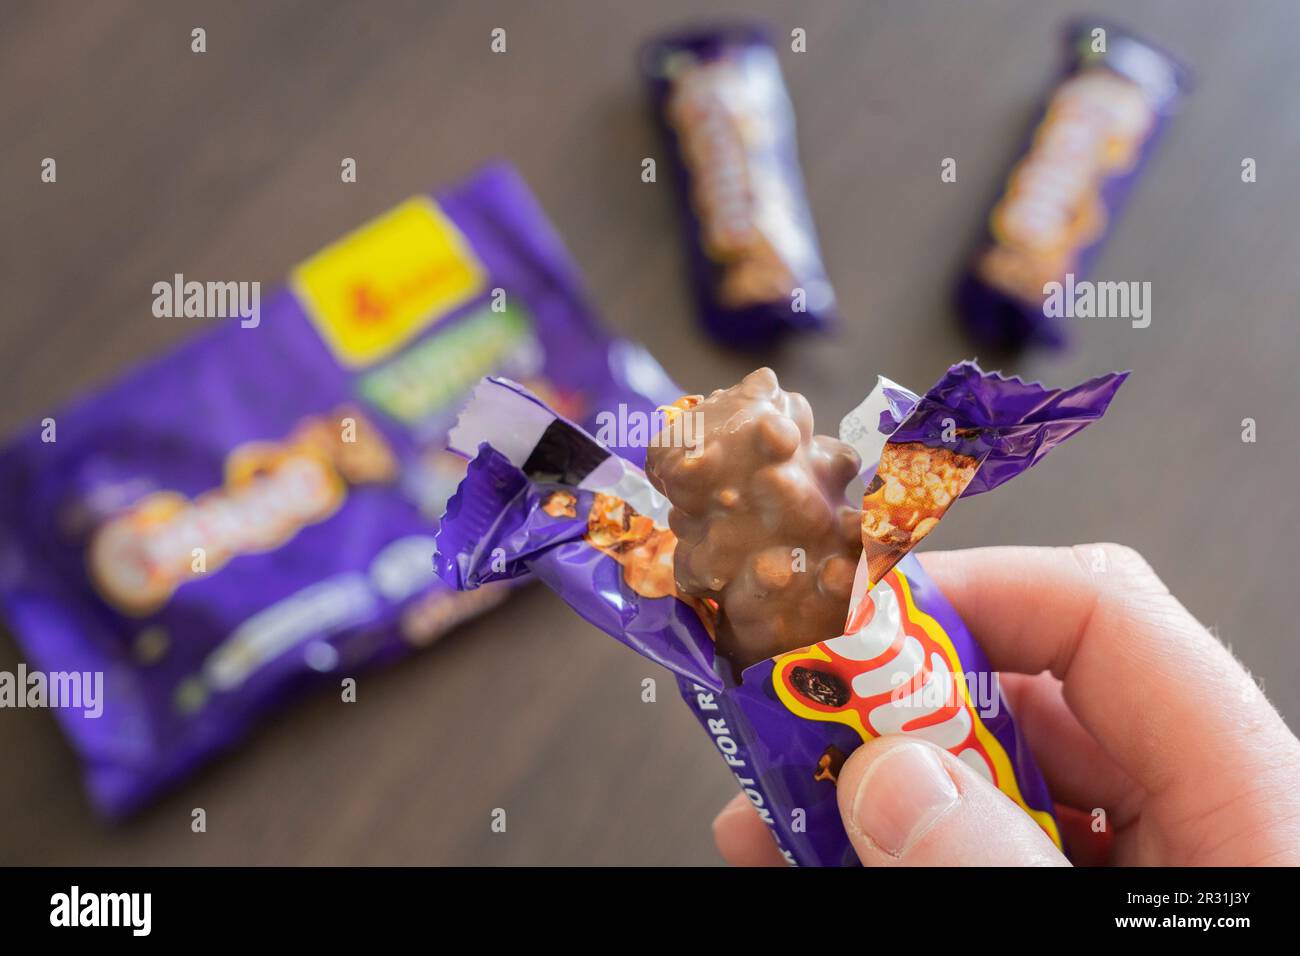 Una mano dell'uomo che tiene una barra di cioccolato del picnic di Cadbury unwrapped, circa mangiarla, Inghilterra. Concetto: Grasso e zucchero, snacking, cibo malsano Foto Stock